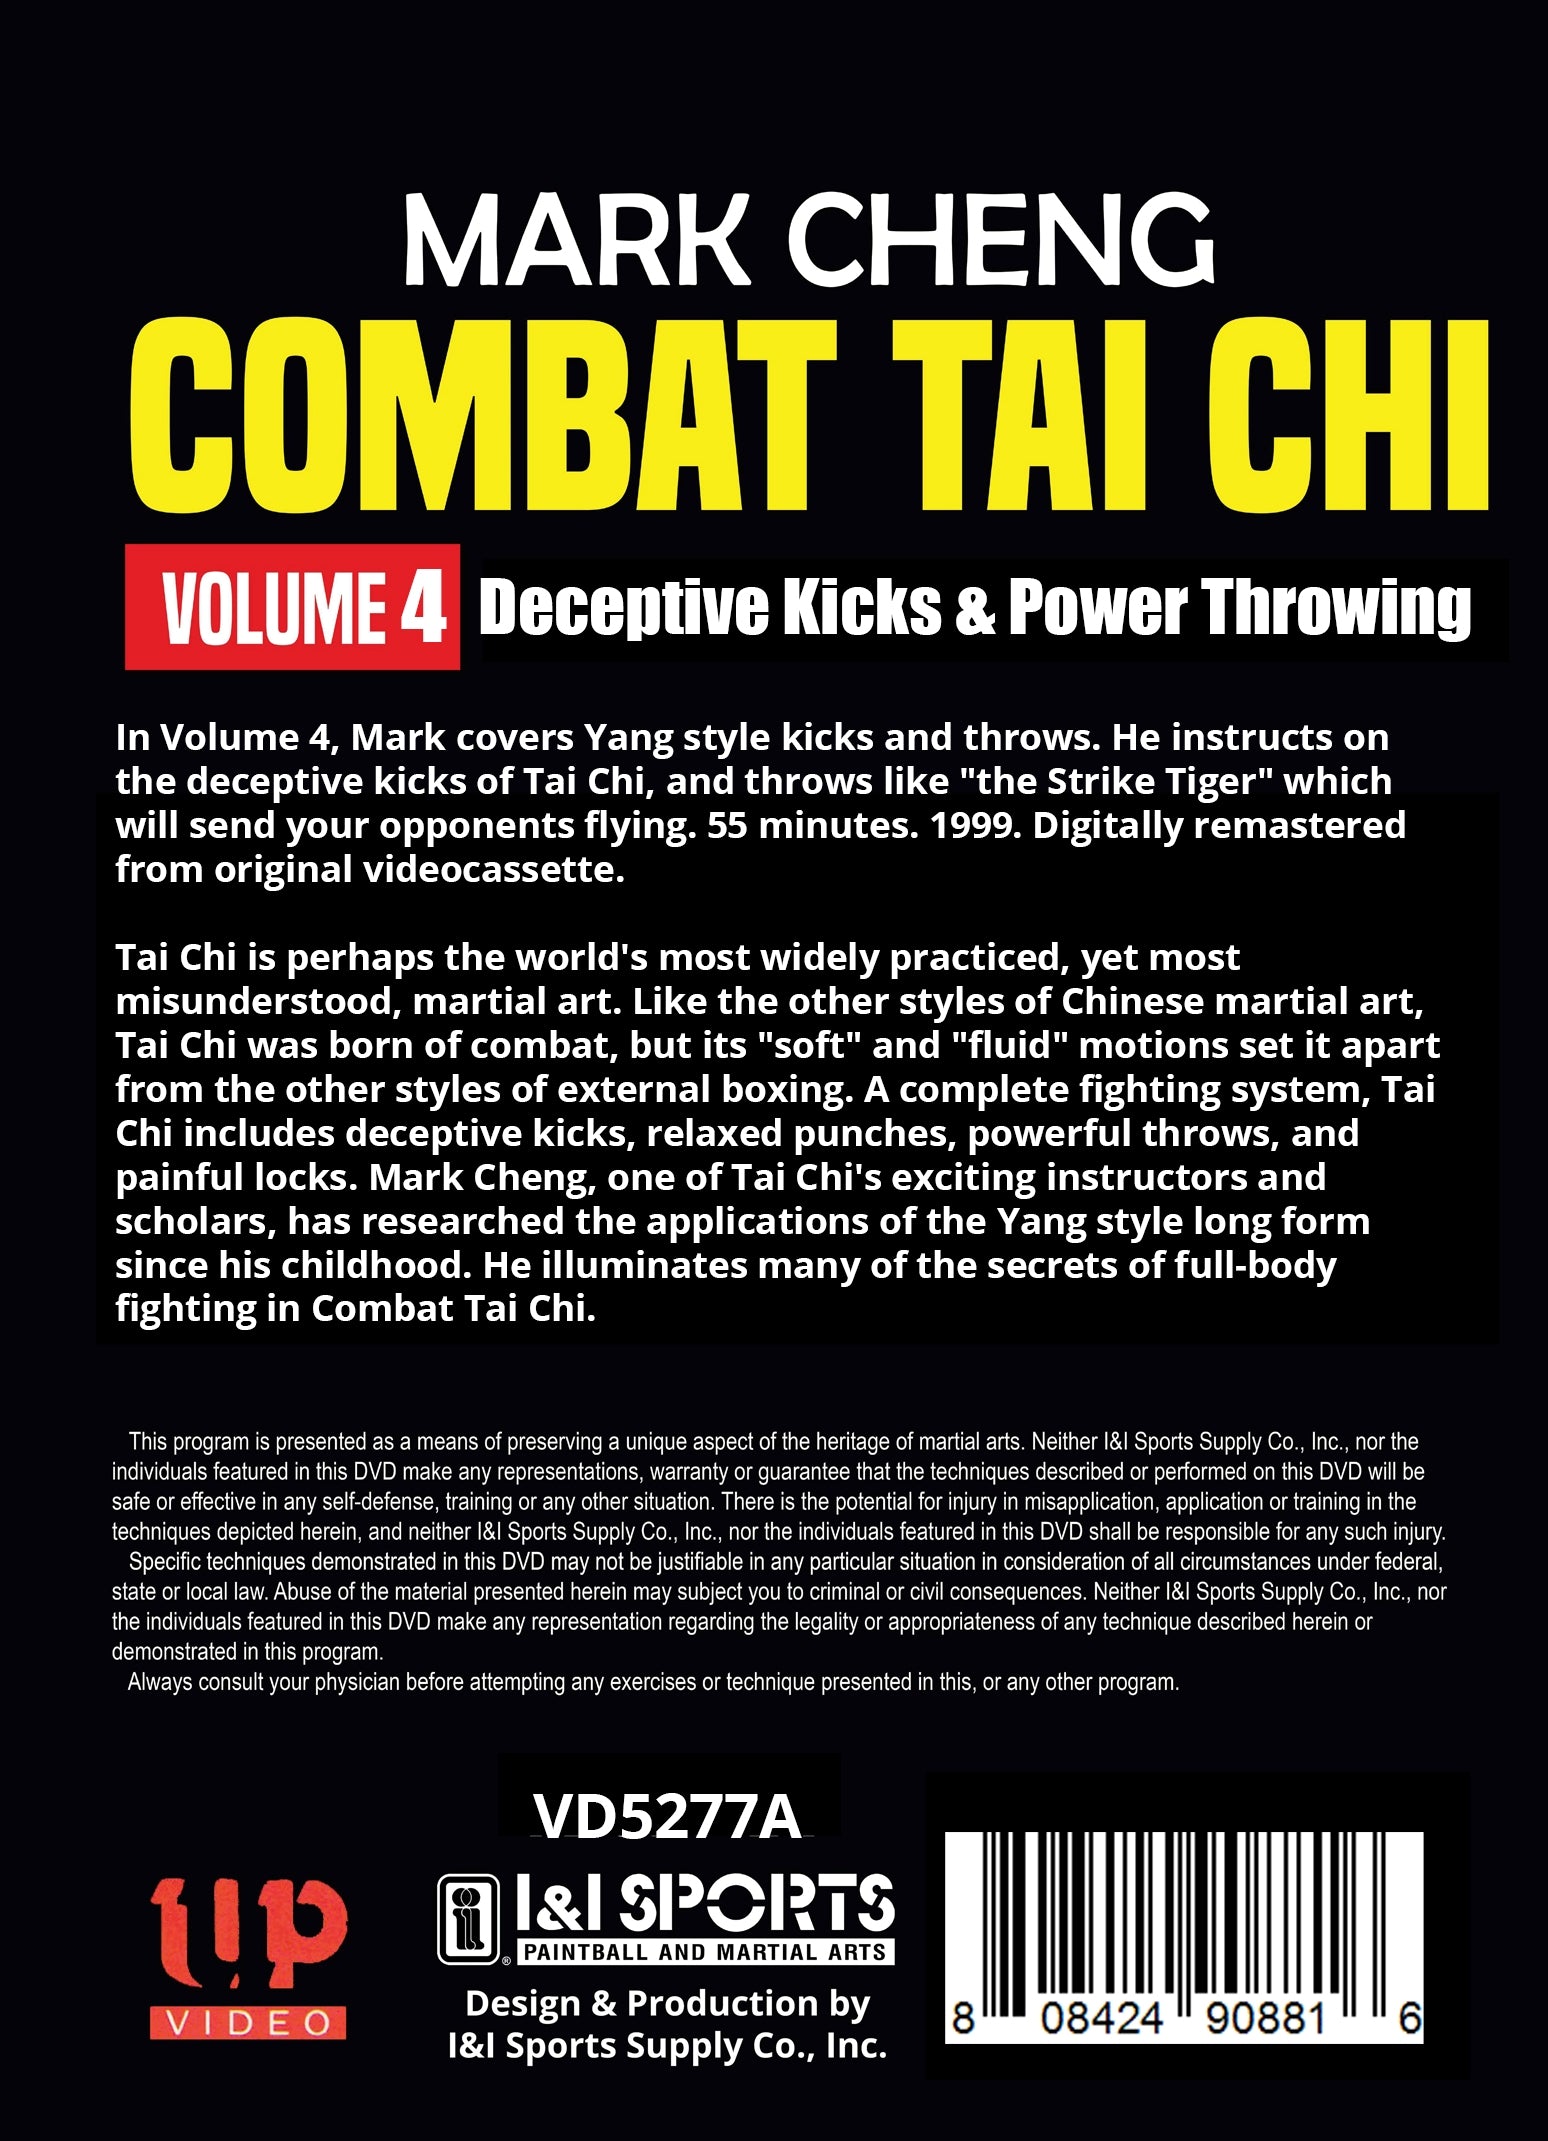 Combat Tai Chi #4 Deceptive Kicks & Power Throwing Yang style DVD Mark Cheng